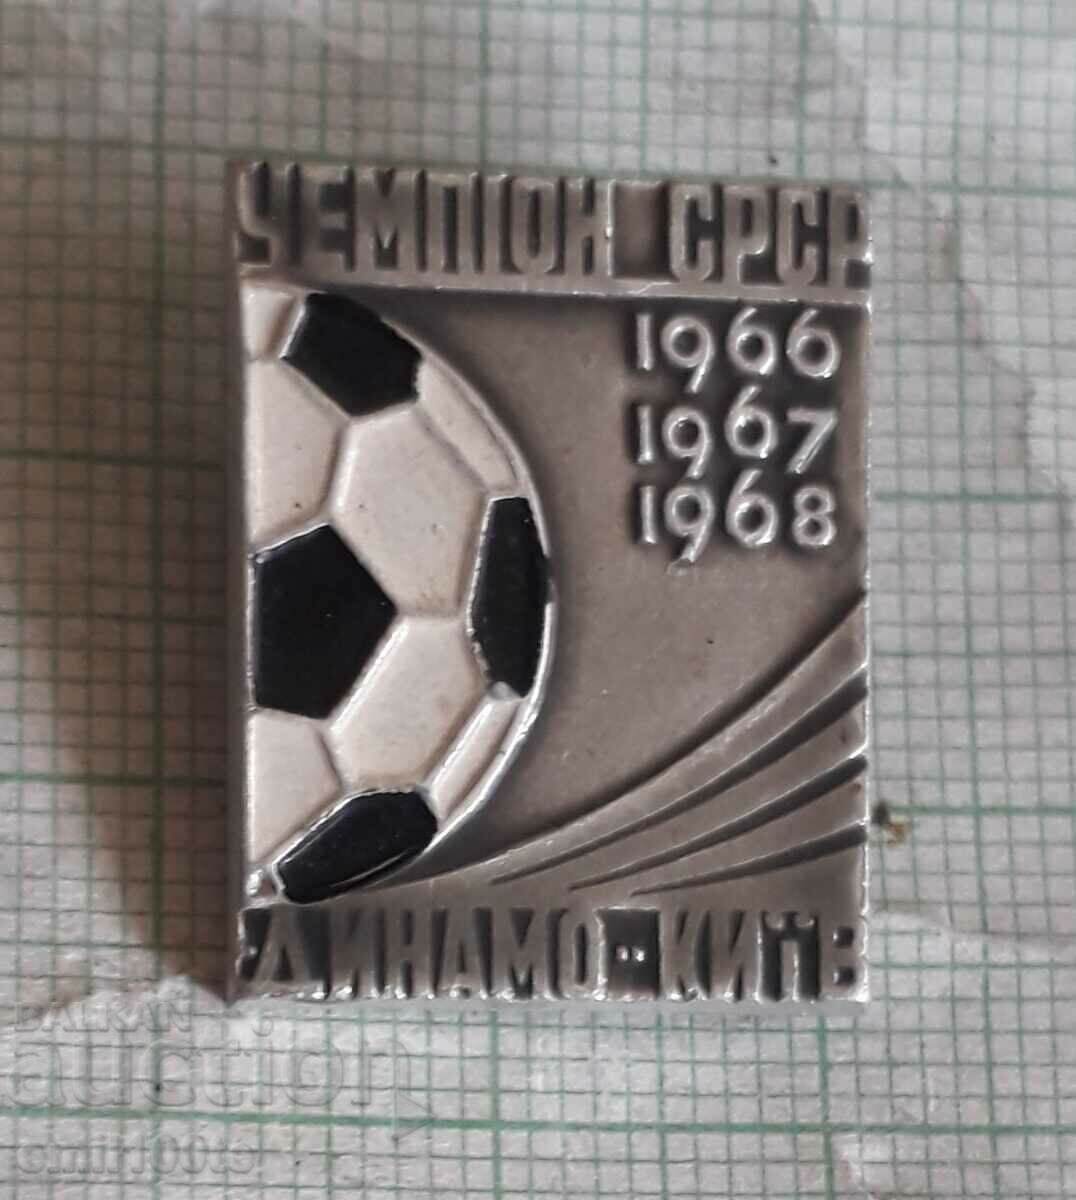 Σήμα - Πρωταθλητής ποδοσφαίρου Ντιναμό Κιέβου ΕΣΣΔ 1966 1967 1968